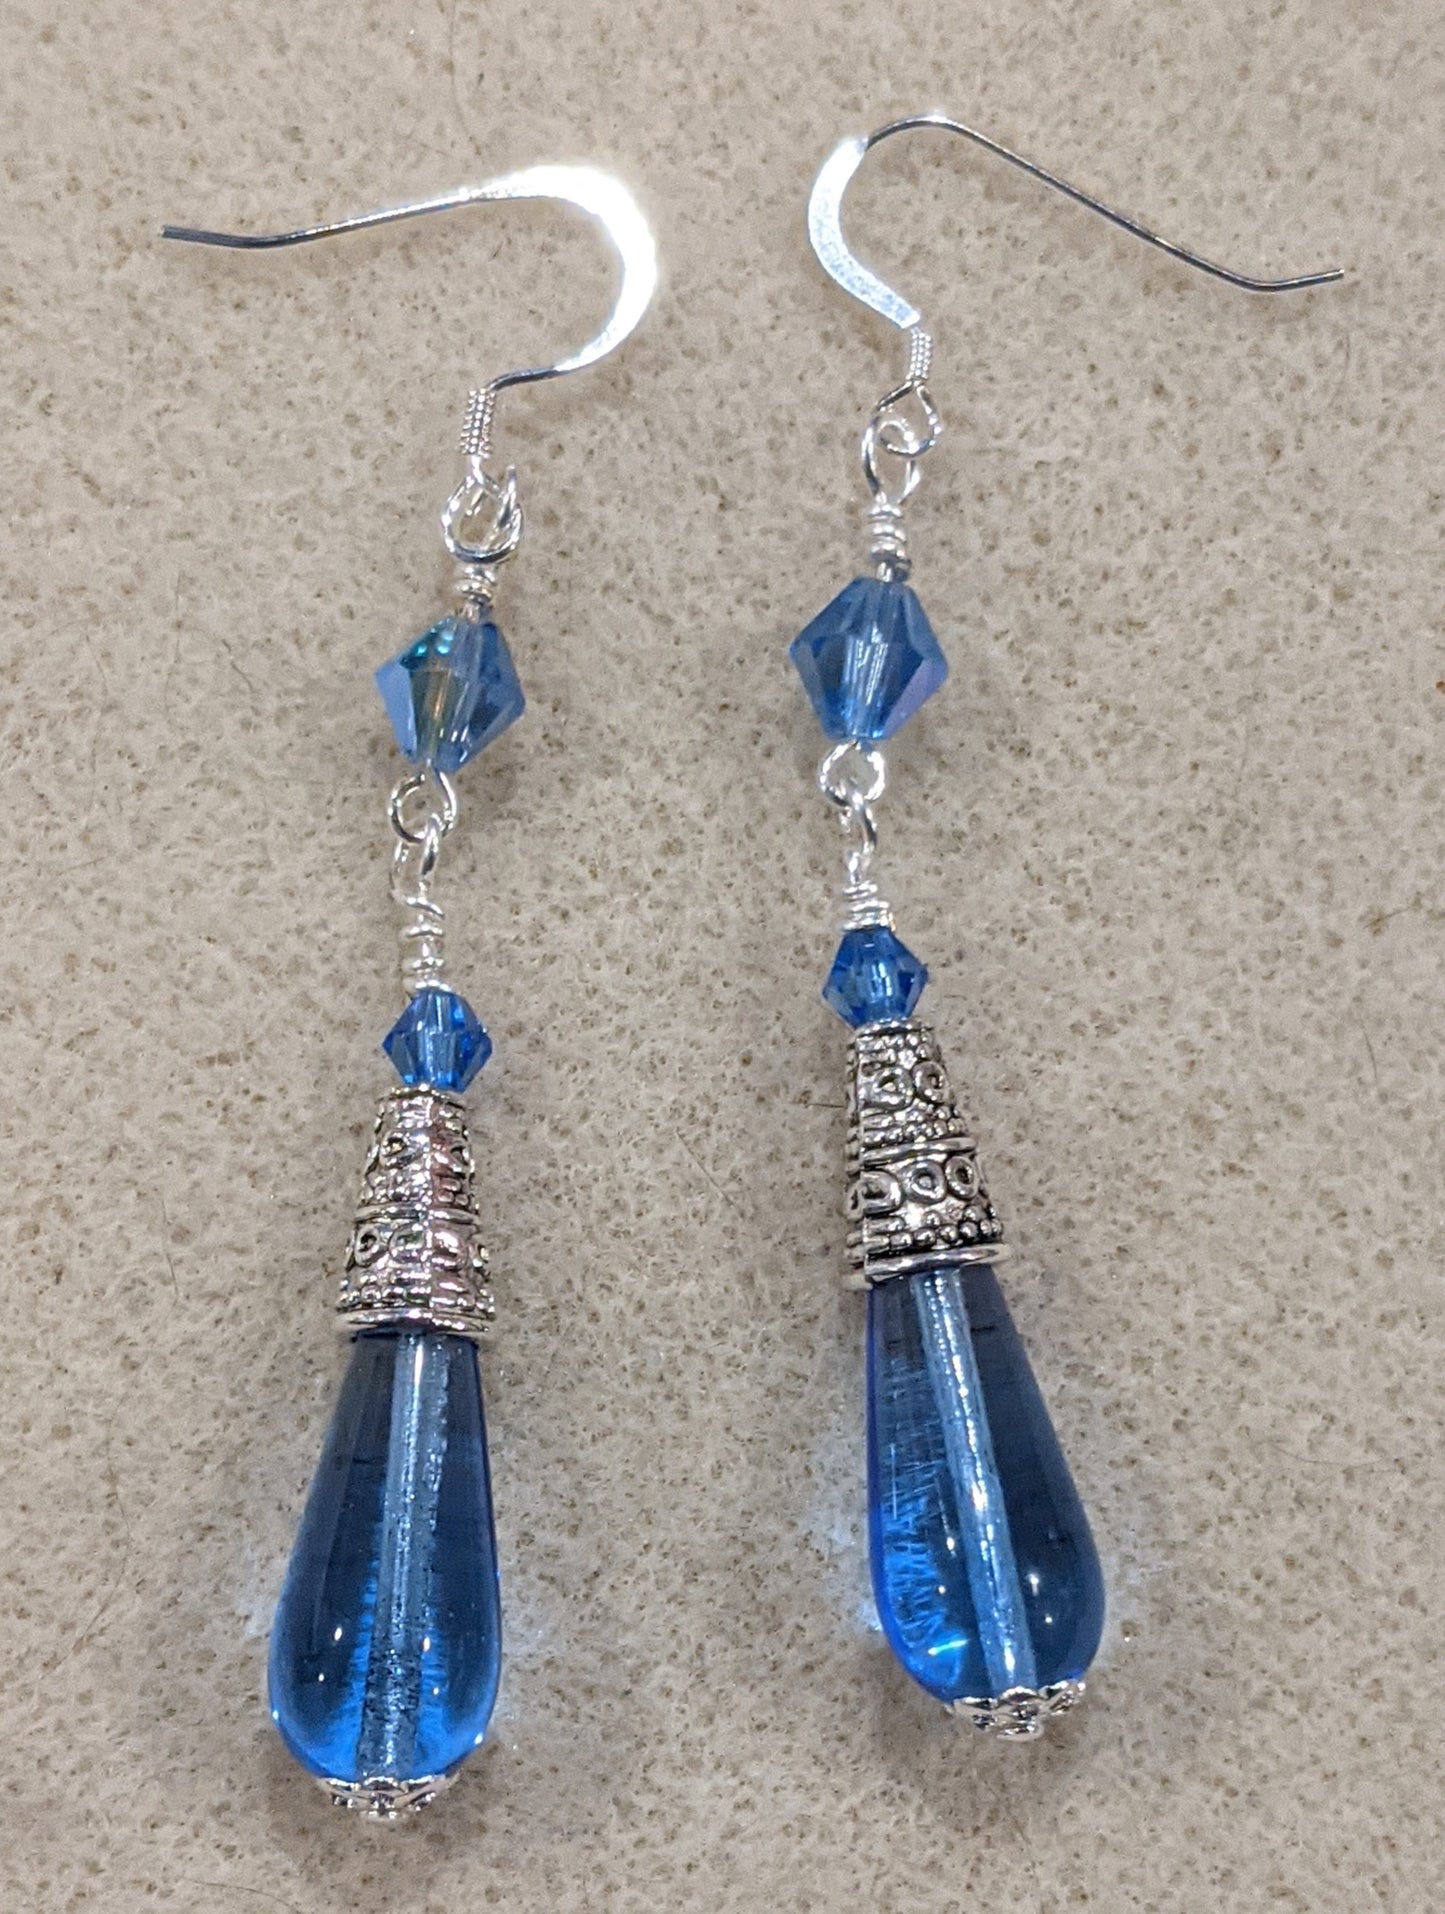 Czech Pressed Glass Dangle Earrings Beaded Earrings Dragon & Wolf Designs Sapphire blue  